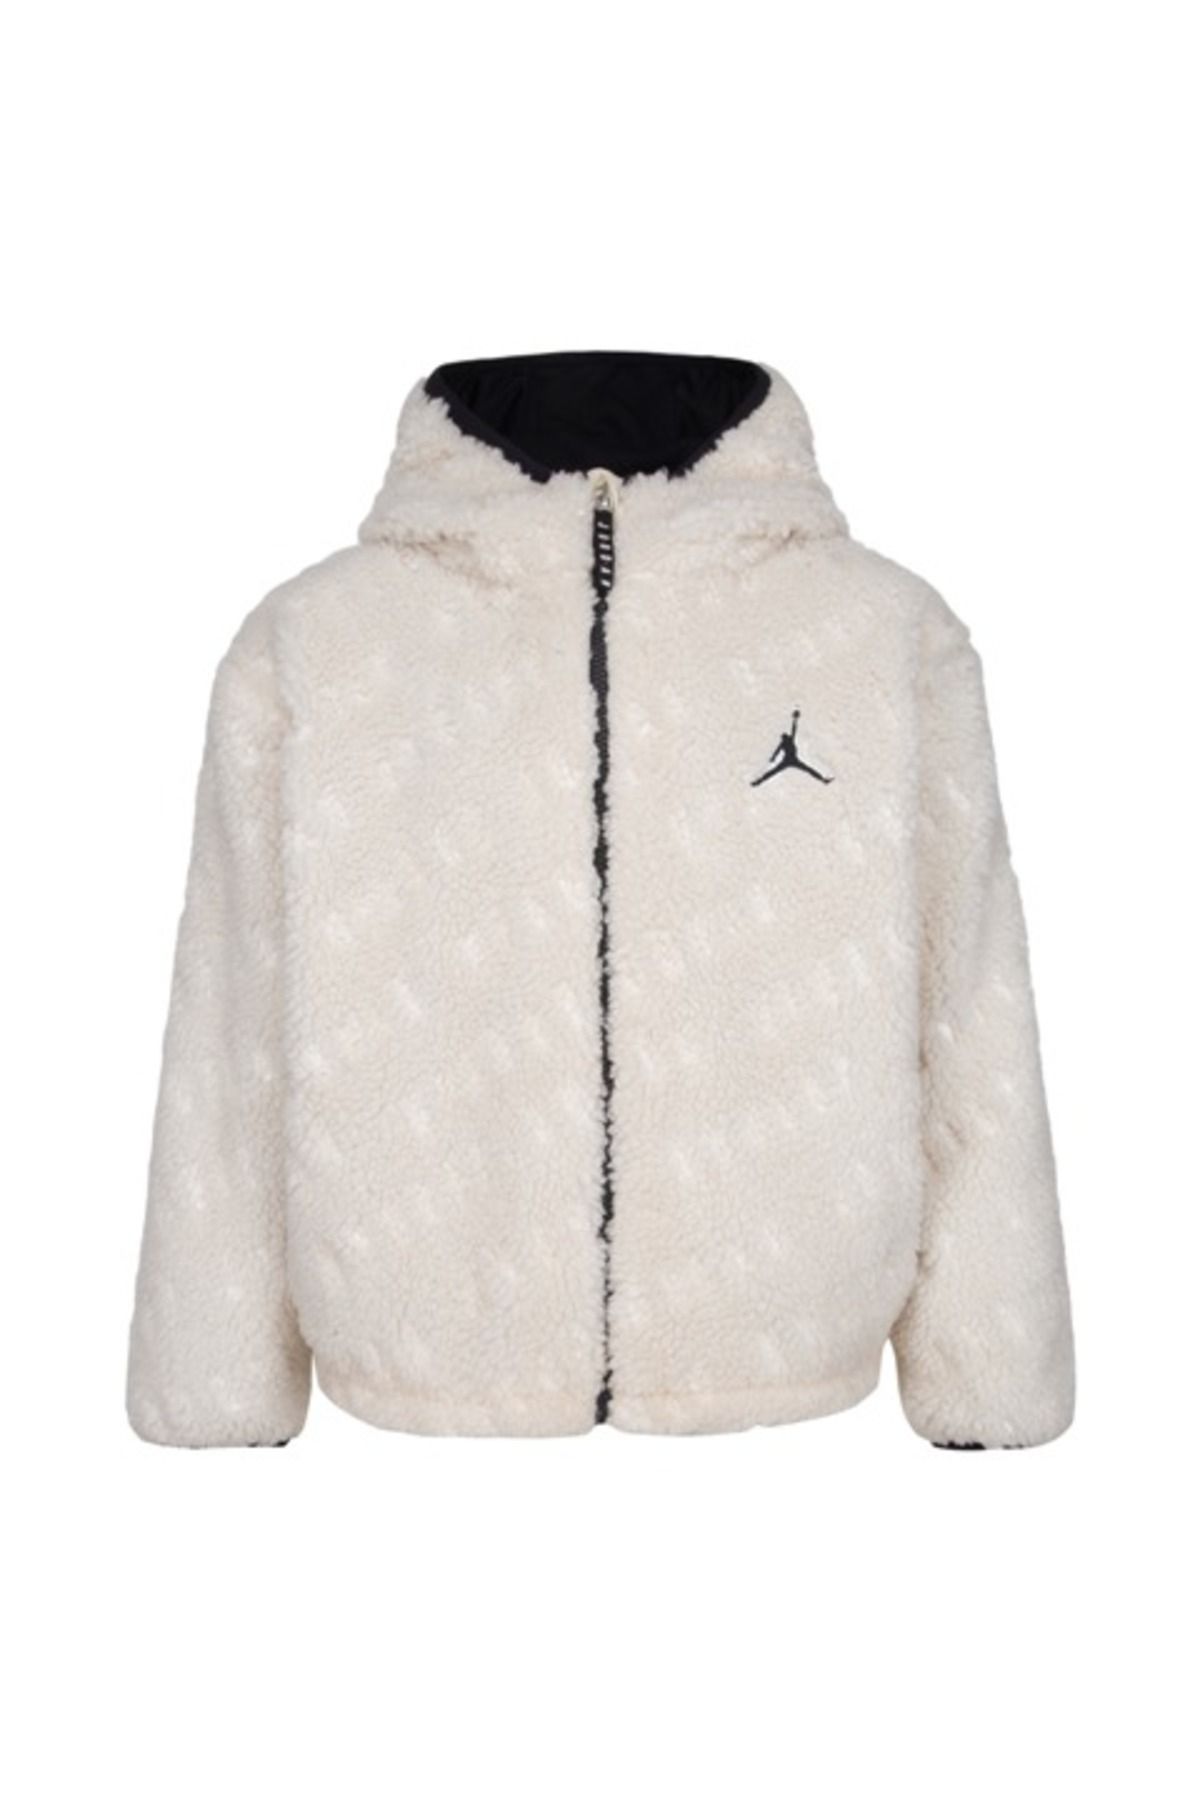 Nike Jordan Jacquard Sherpa Jkt Kız Çocuk Mont 45c435-w2u